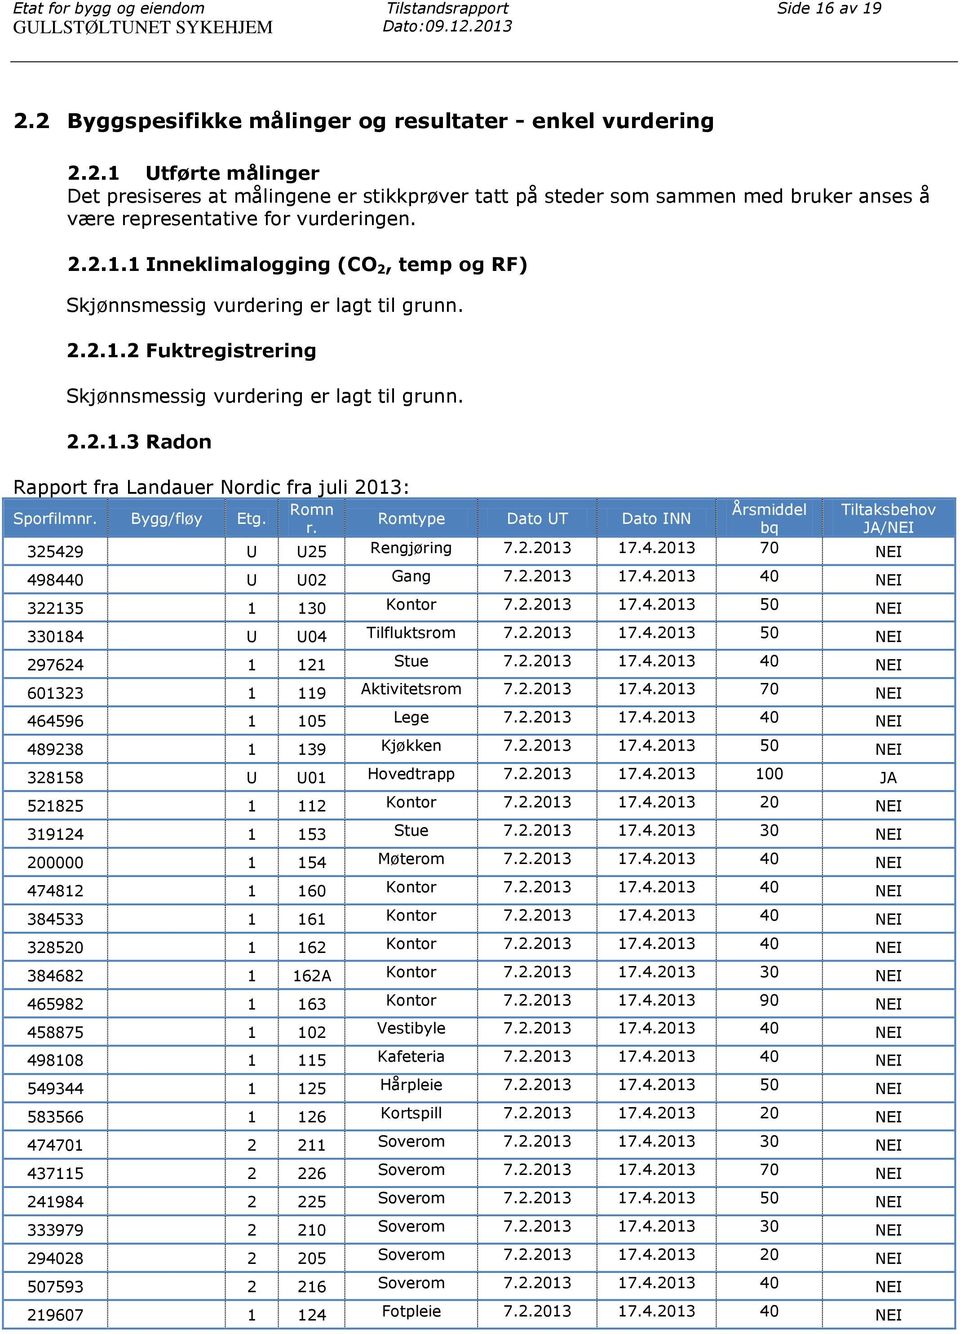 2.2.1.1 Inneklimalogging (CO 2, temp og RF) Skjønnsmessig vurdering er lagt til grunn. 2.2.1.2 Fuktregistrering Skjønnsmessig vurdering er lagt til grunn. 2.2.1.3 Radon Rapport fra Landauer Nordic fra juli 2013: Romn Sporfilmnr.